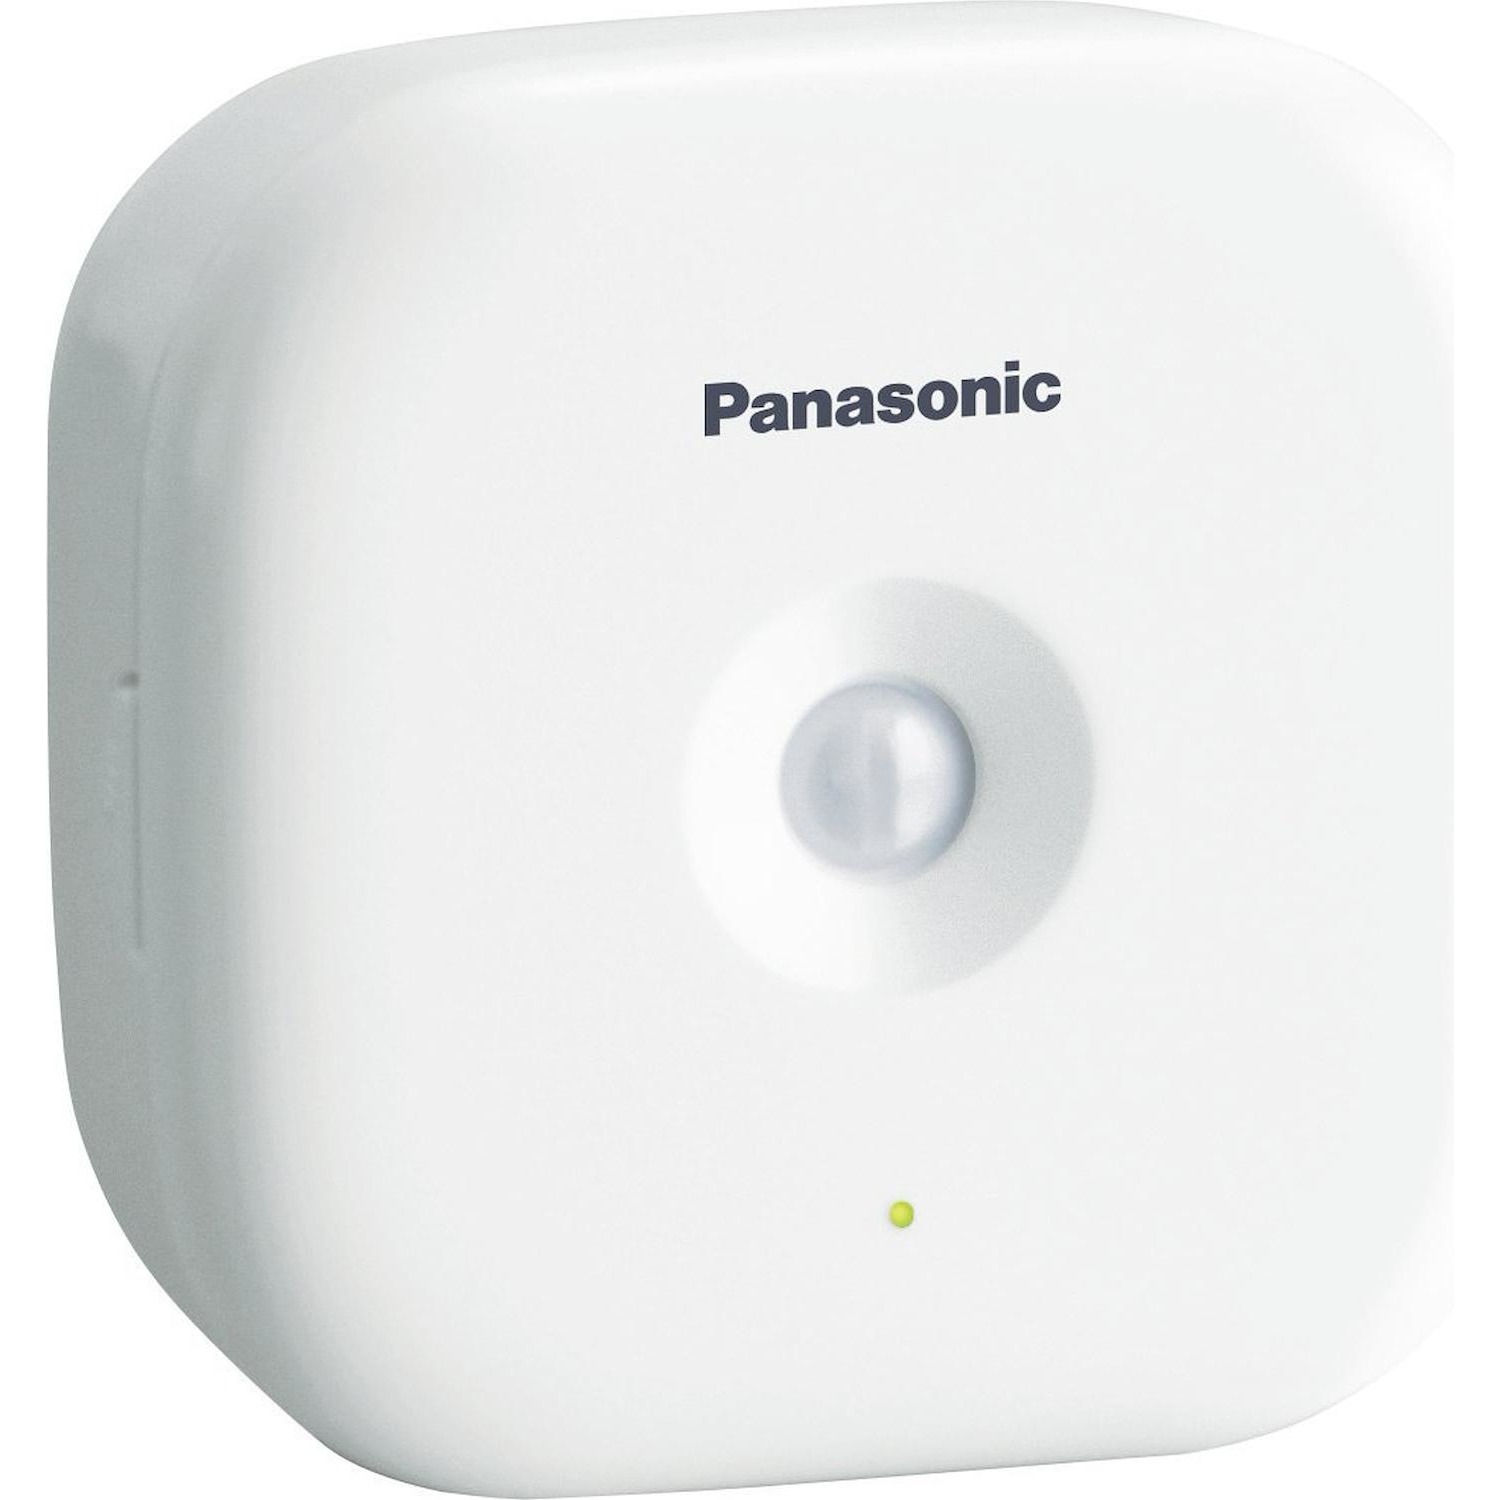 Immagine per Sensore di movimento Panasonic da DIMOStore